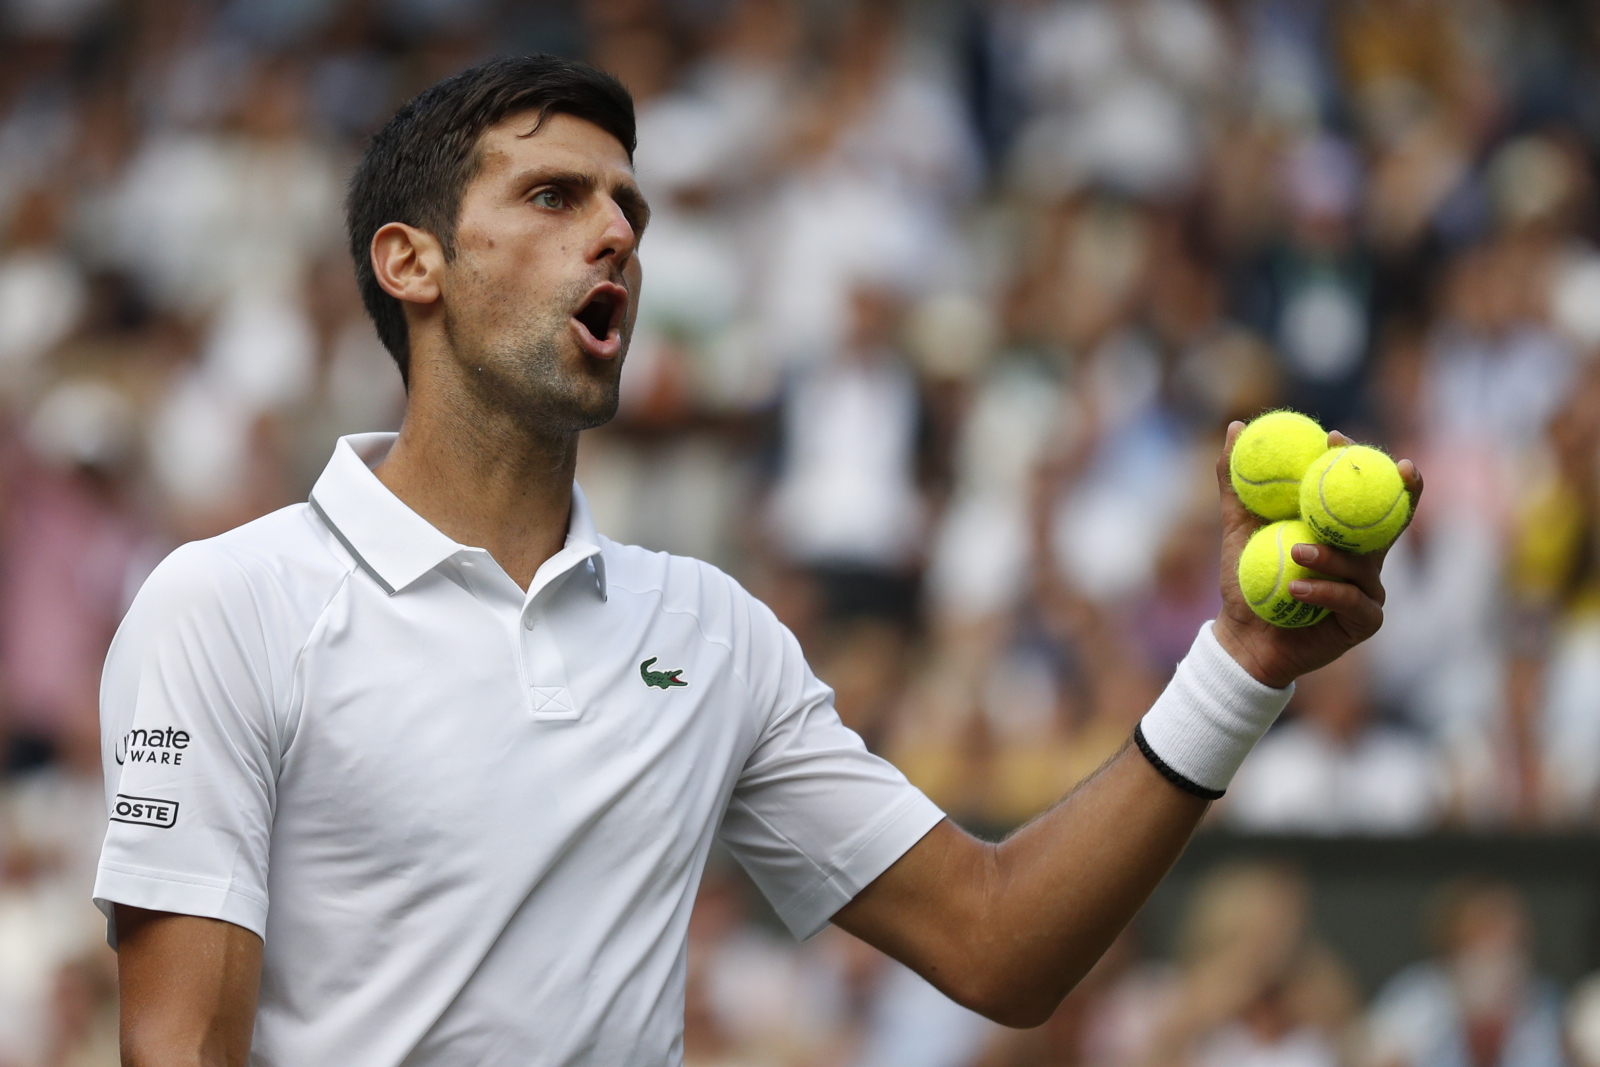 Novak Djokovic cieszy się ze zwycięstwa w Wimbledonie. Fot. PAP/EPA/NIC BOTHMA